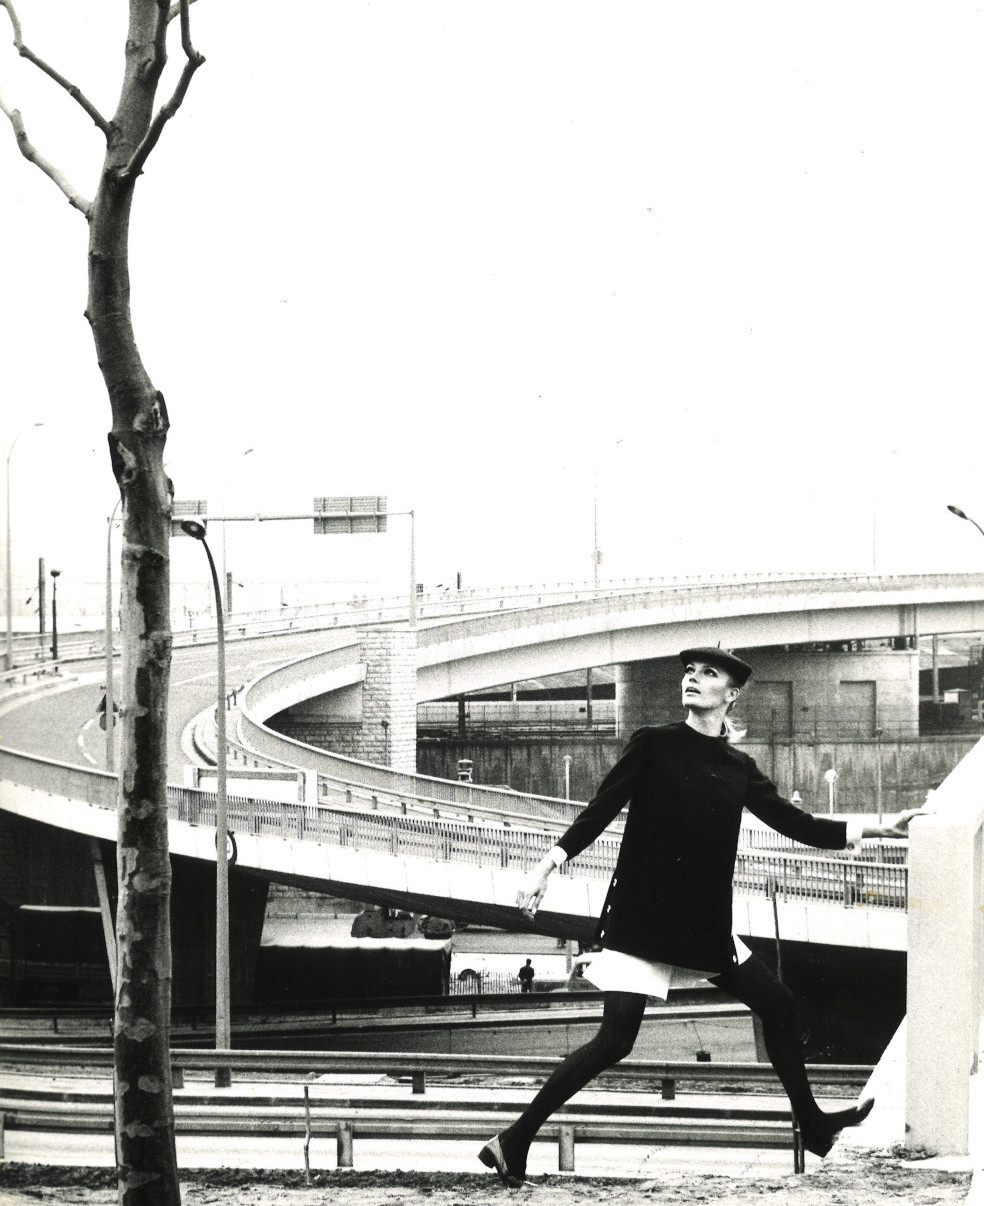 S. t., 1967. Intercambiador de la Porte de la Chapelle, París